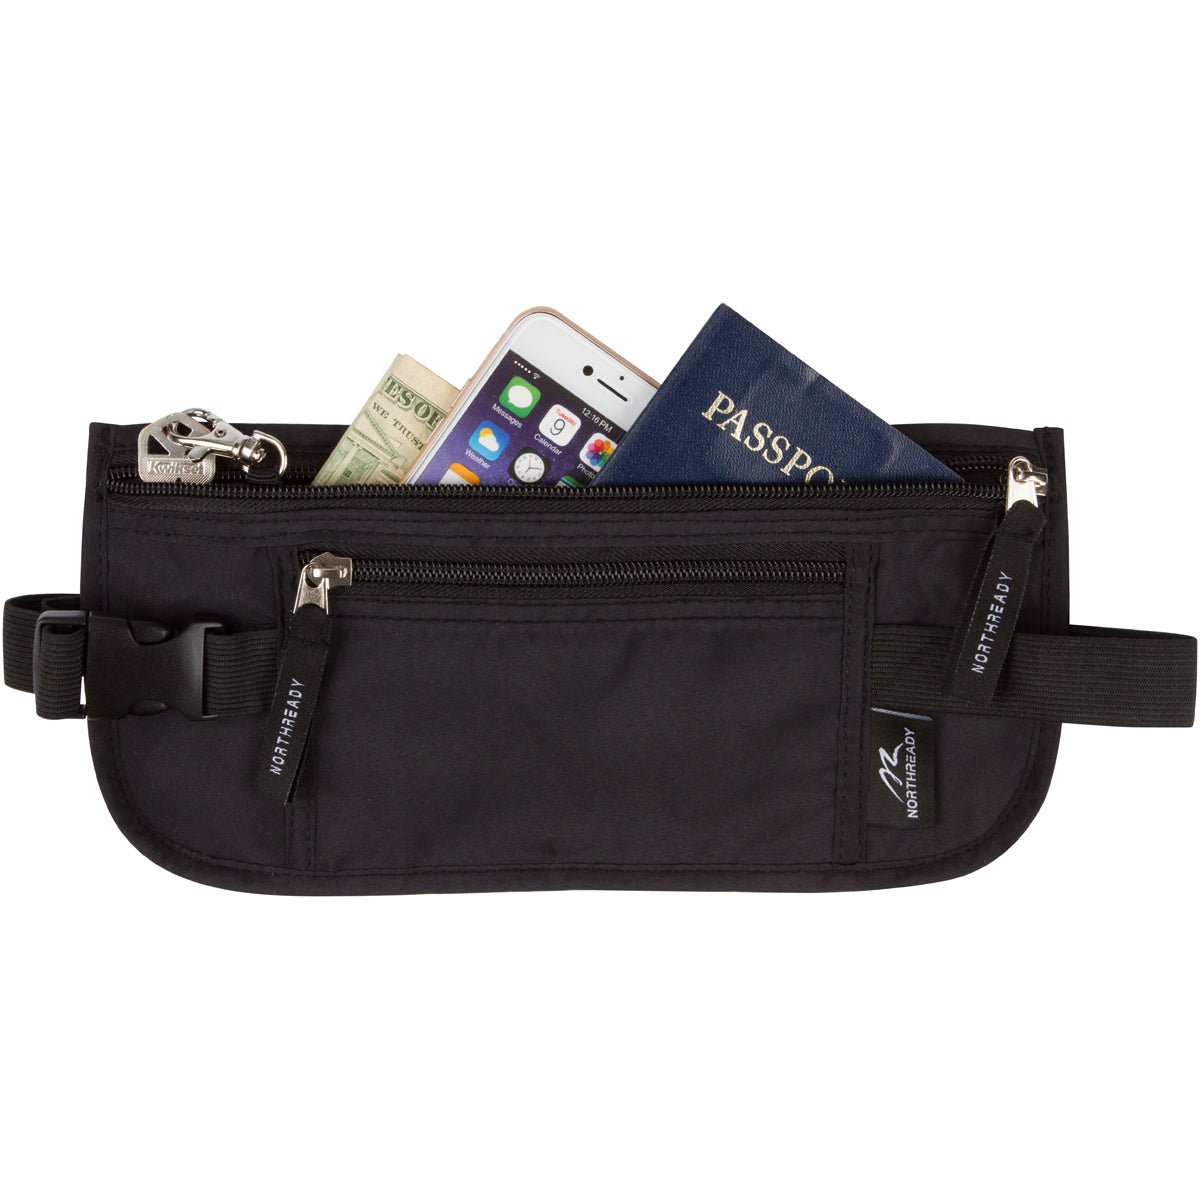 Armear Travel Belt Money Waist Pack - Hidden